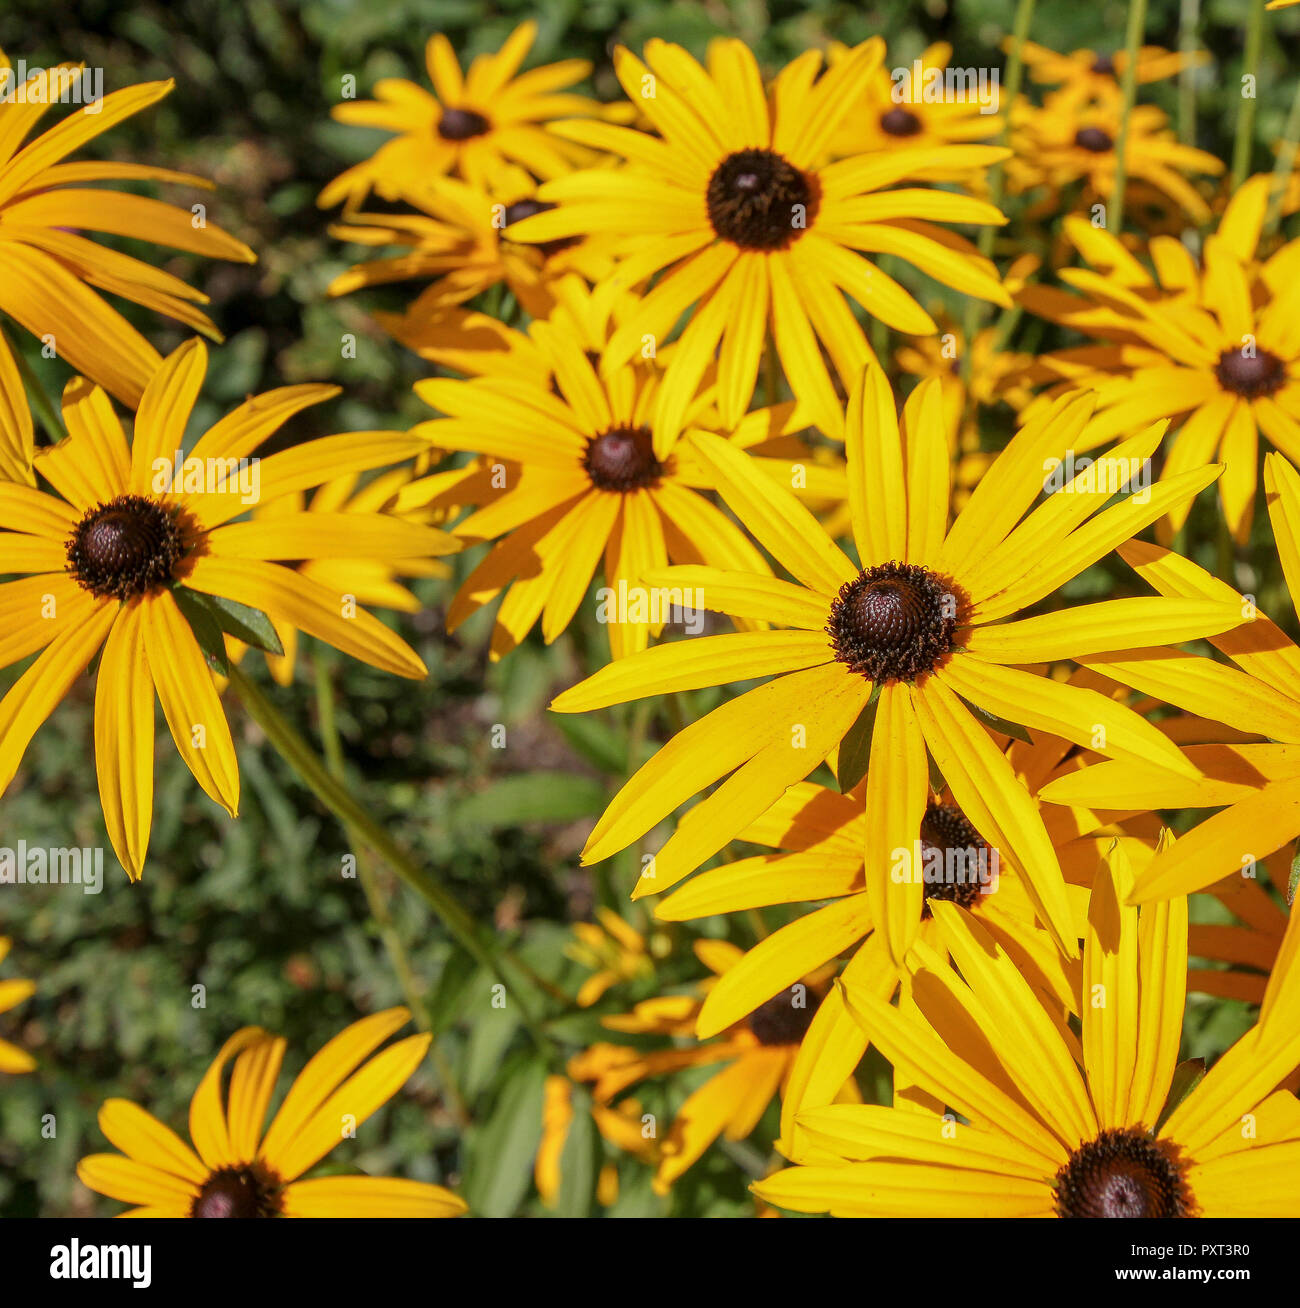 Rudbeckien - gold-gelbe Stauden Blumen in einem Garten Stockfotografie -  Alamy